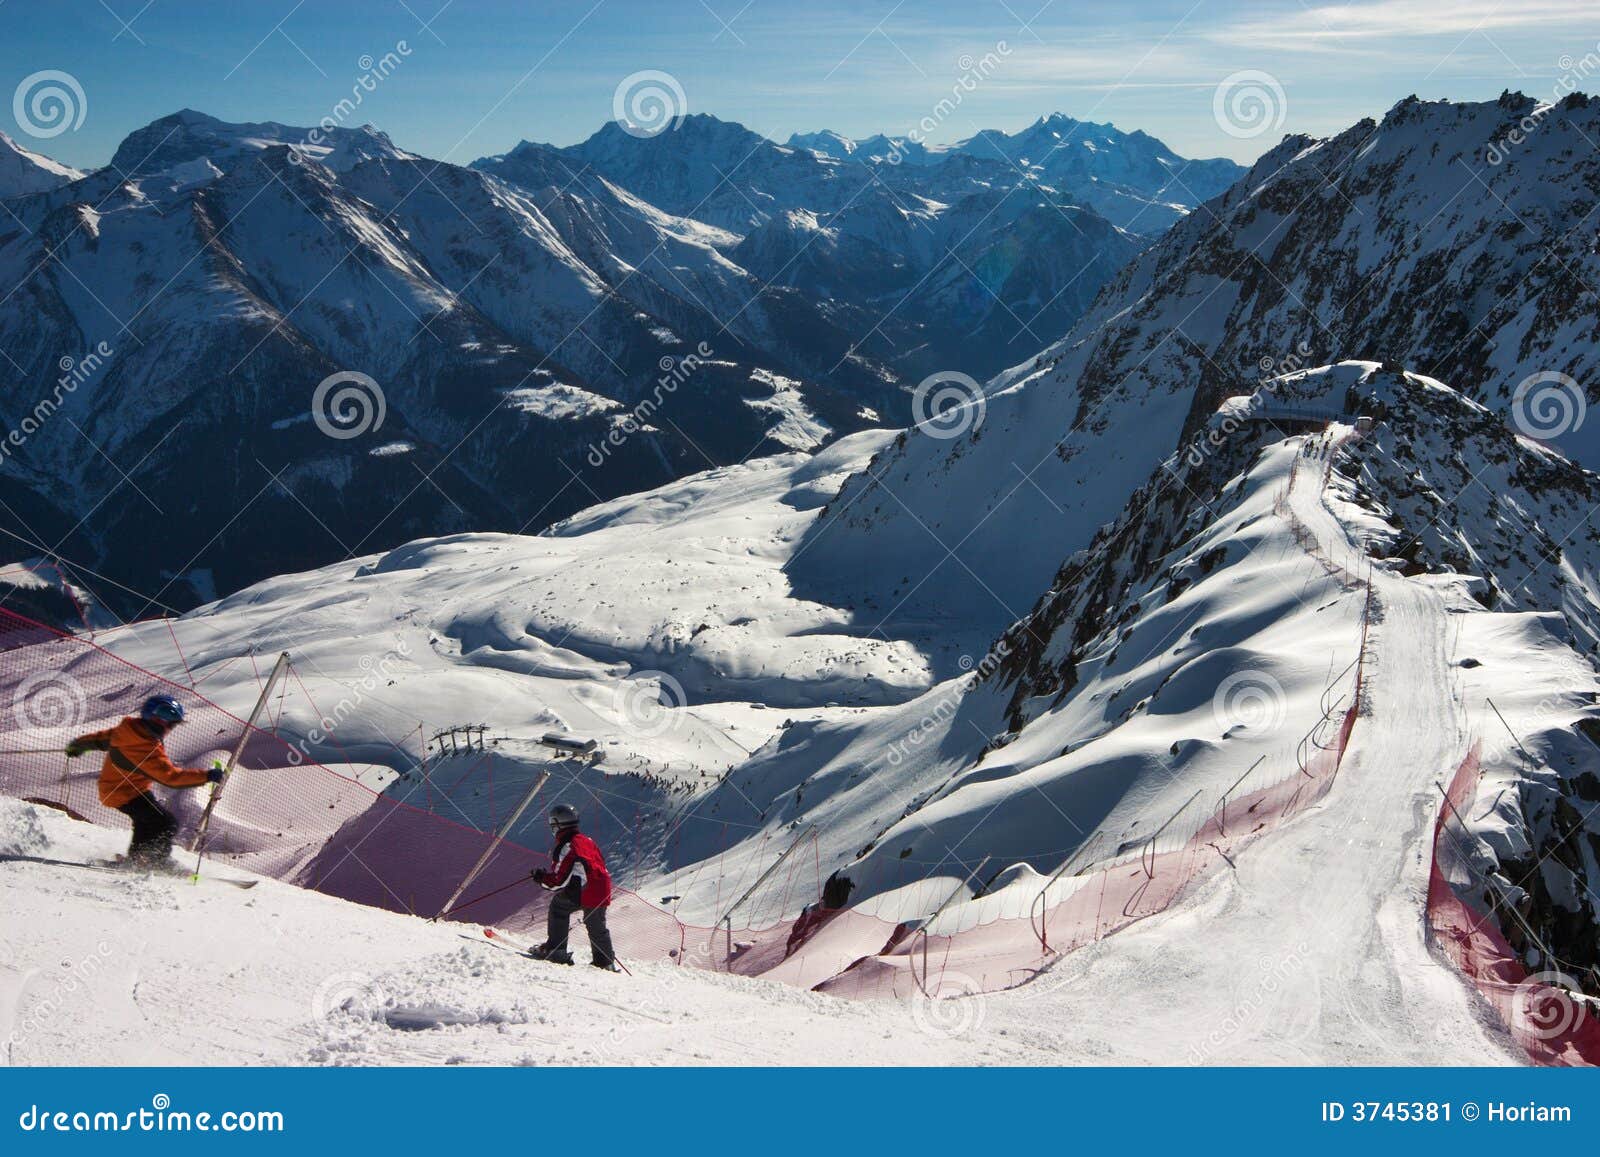 ski sceninc image in swiss alps